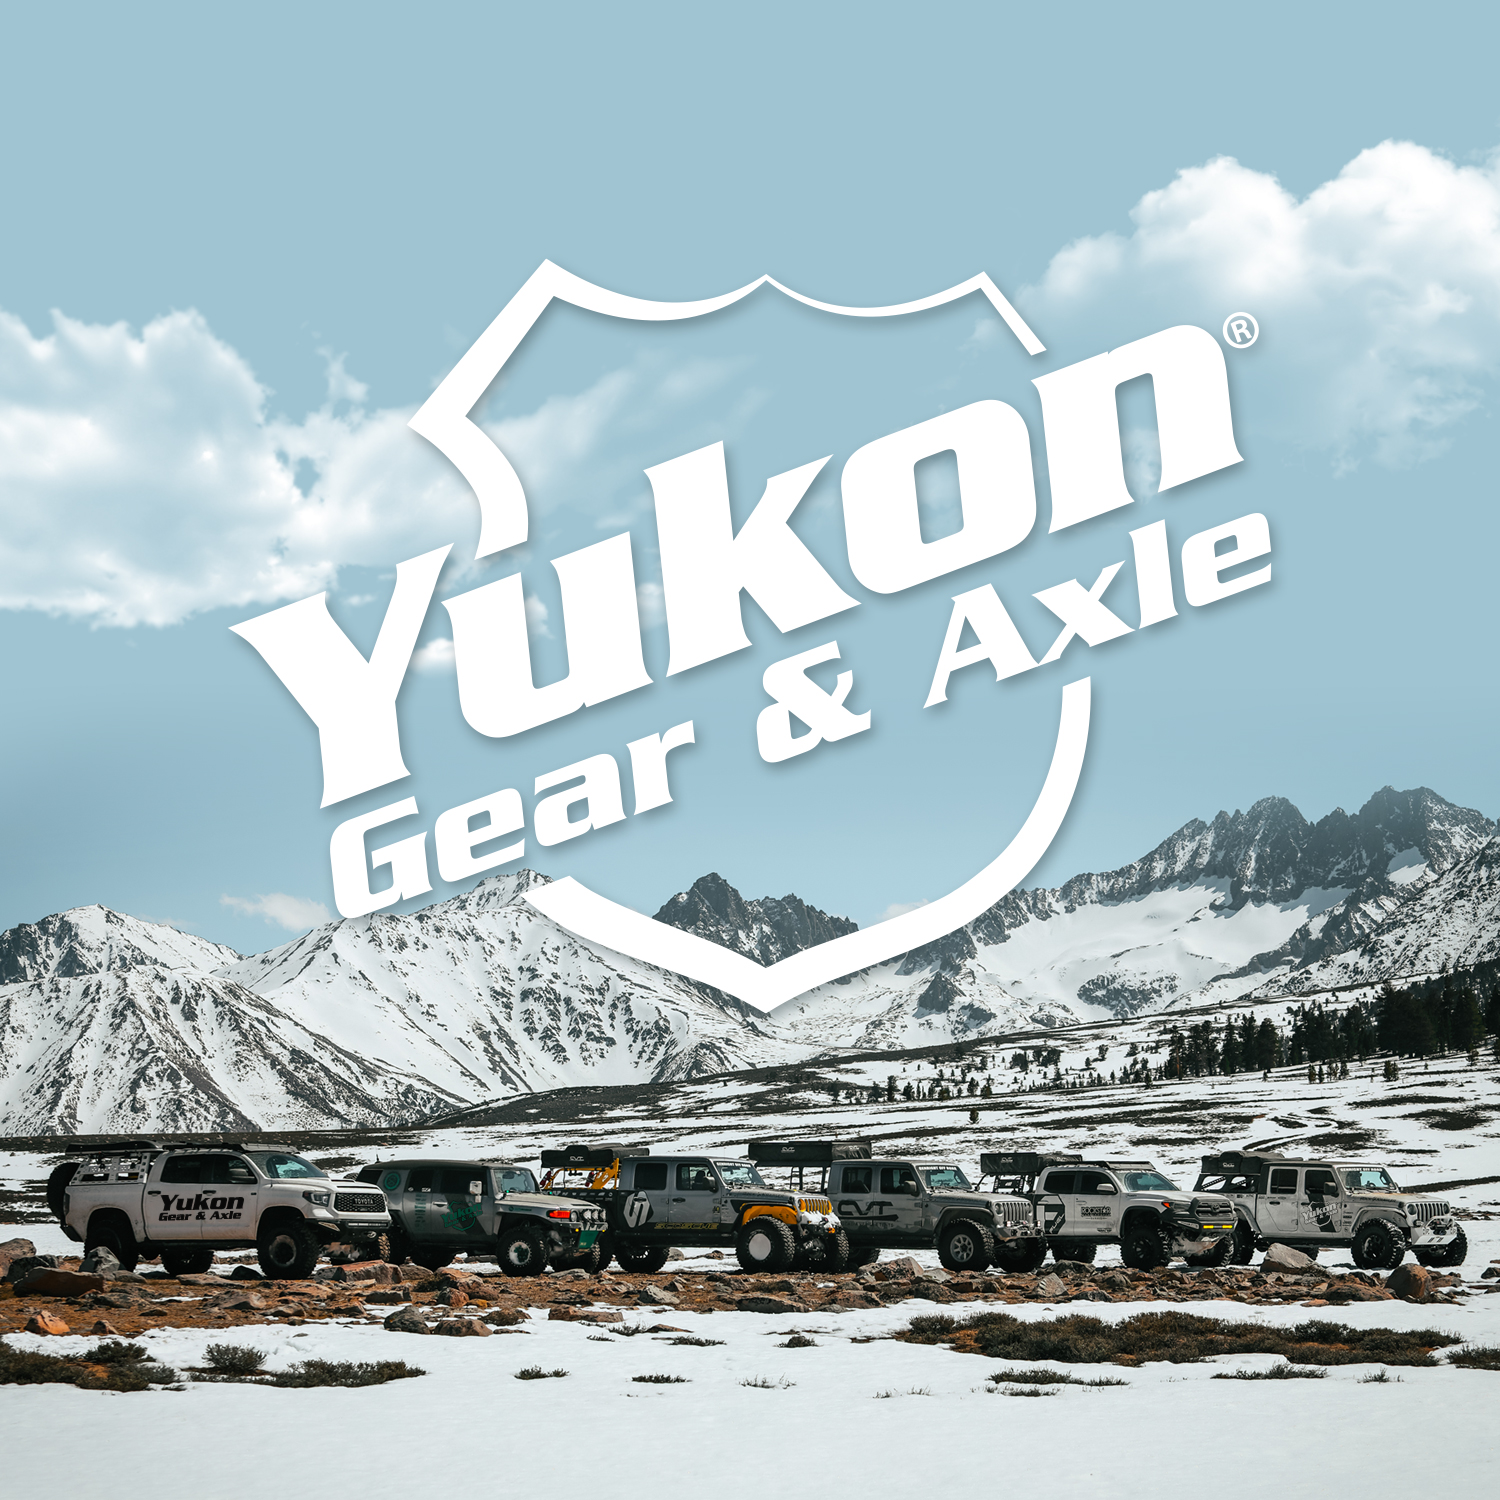 Yukon Minor install kit for Dana 44 differential for Jaguar 